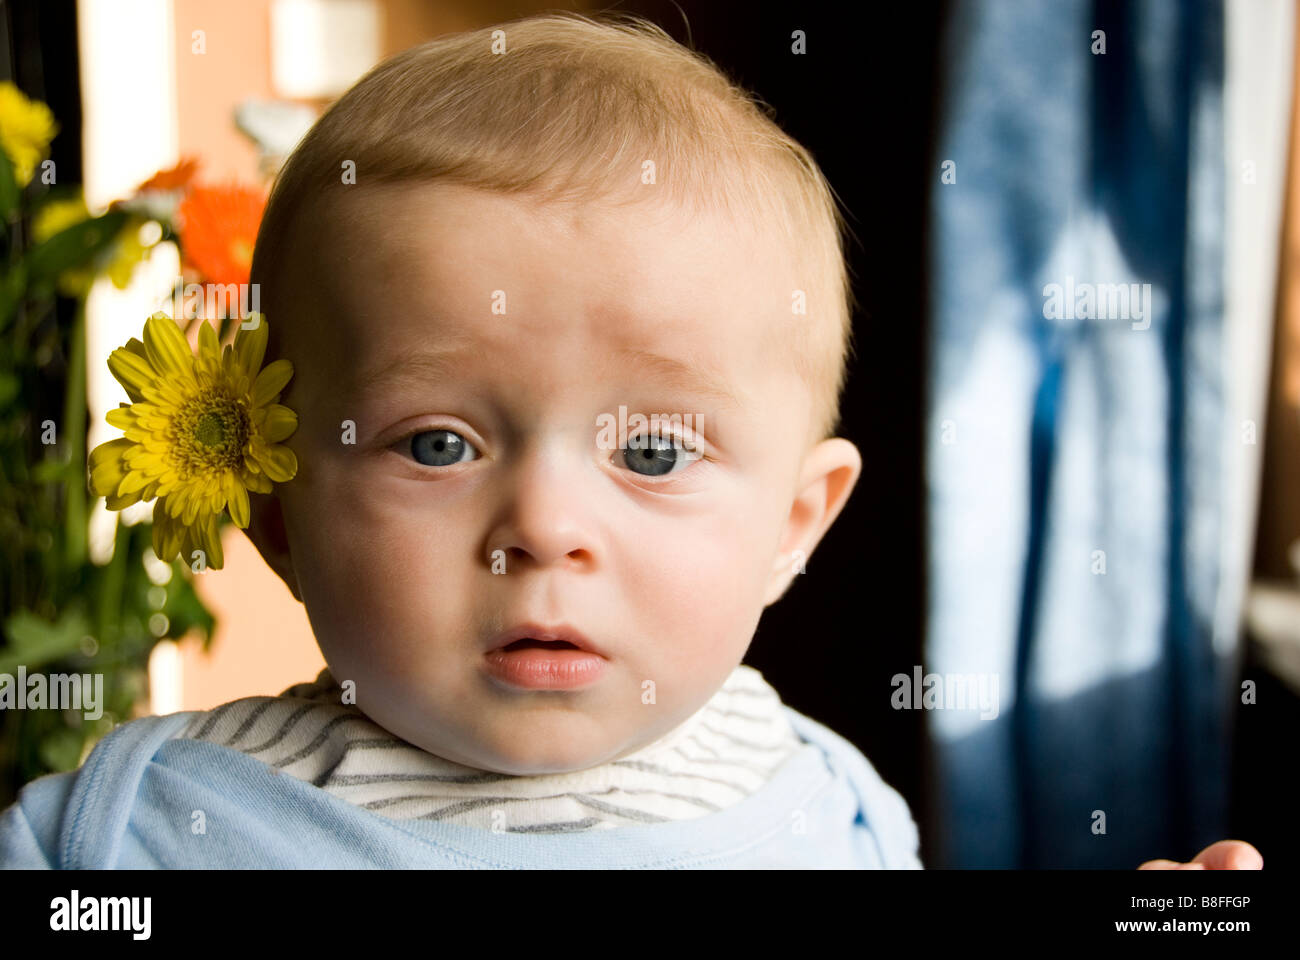 Enge bis der Kopf des Baby Boy ziehen Distressed Gesicht mit einer gelben  Blume versteckt hinter dem Ohr Stockfotografie - Alamy